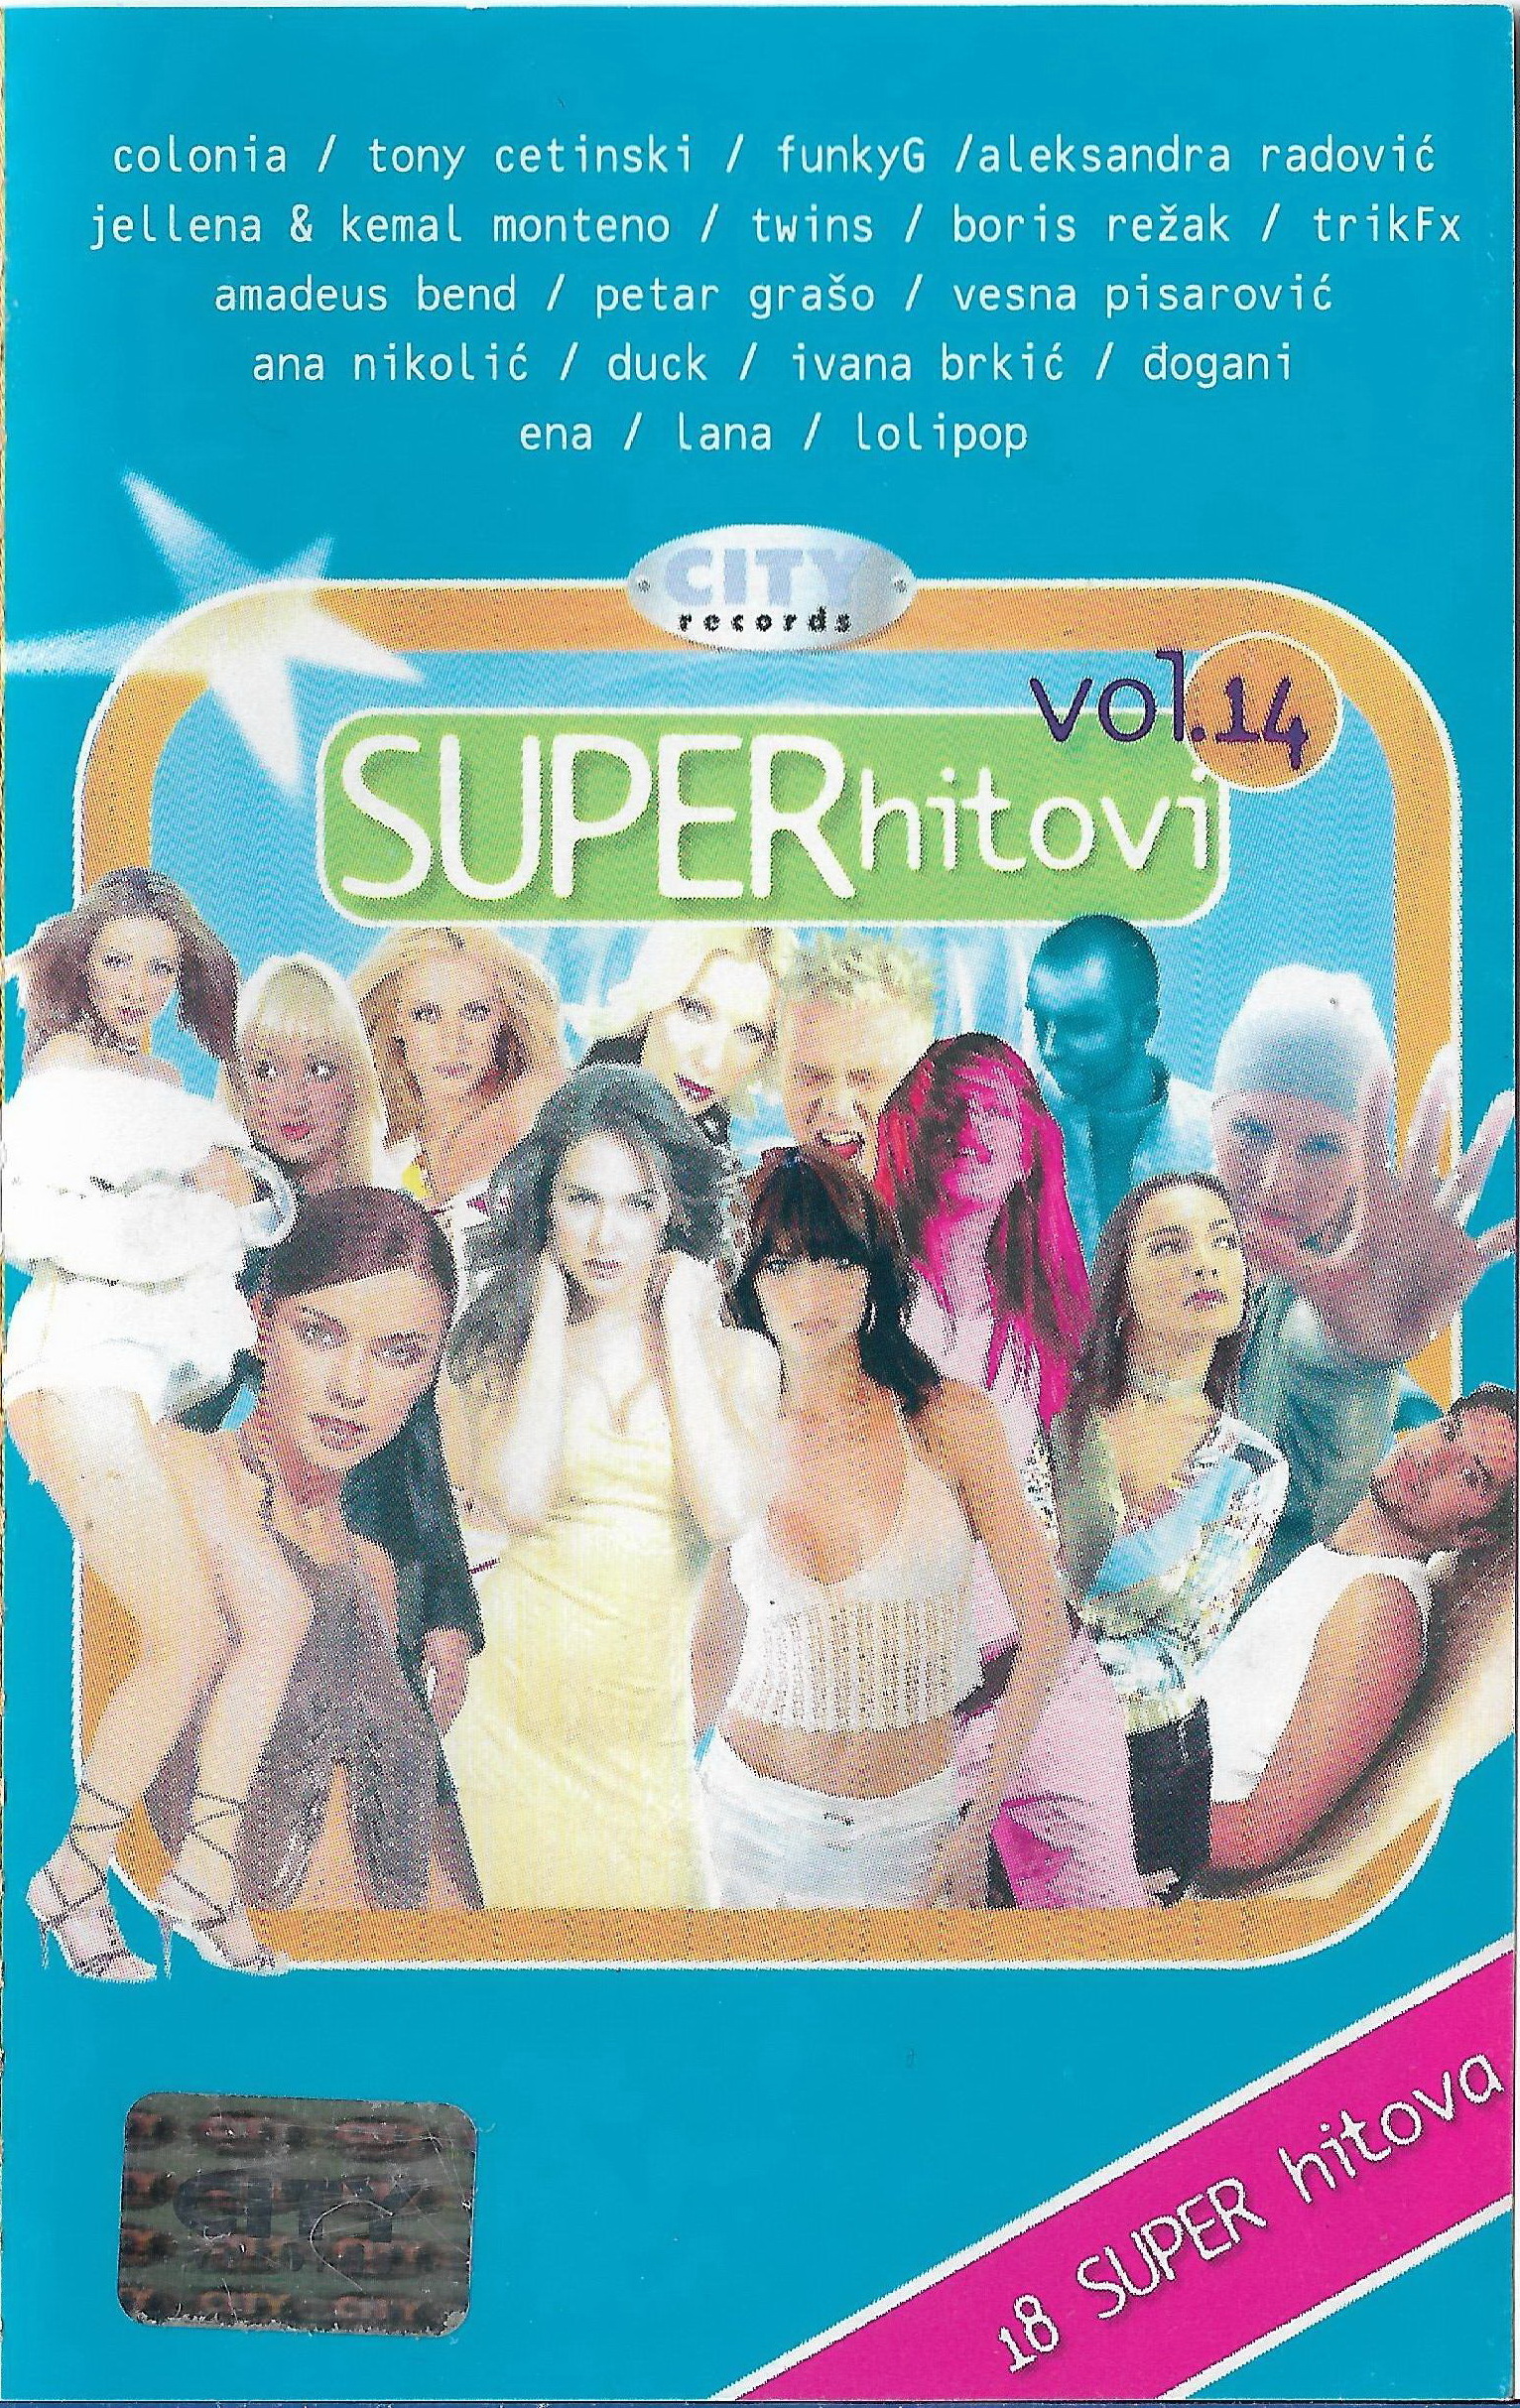 City Super Hitovi 14 2004 1 a